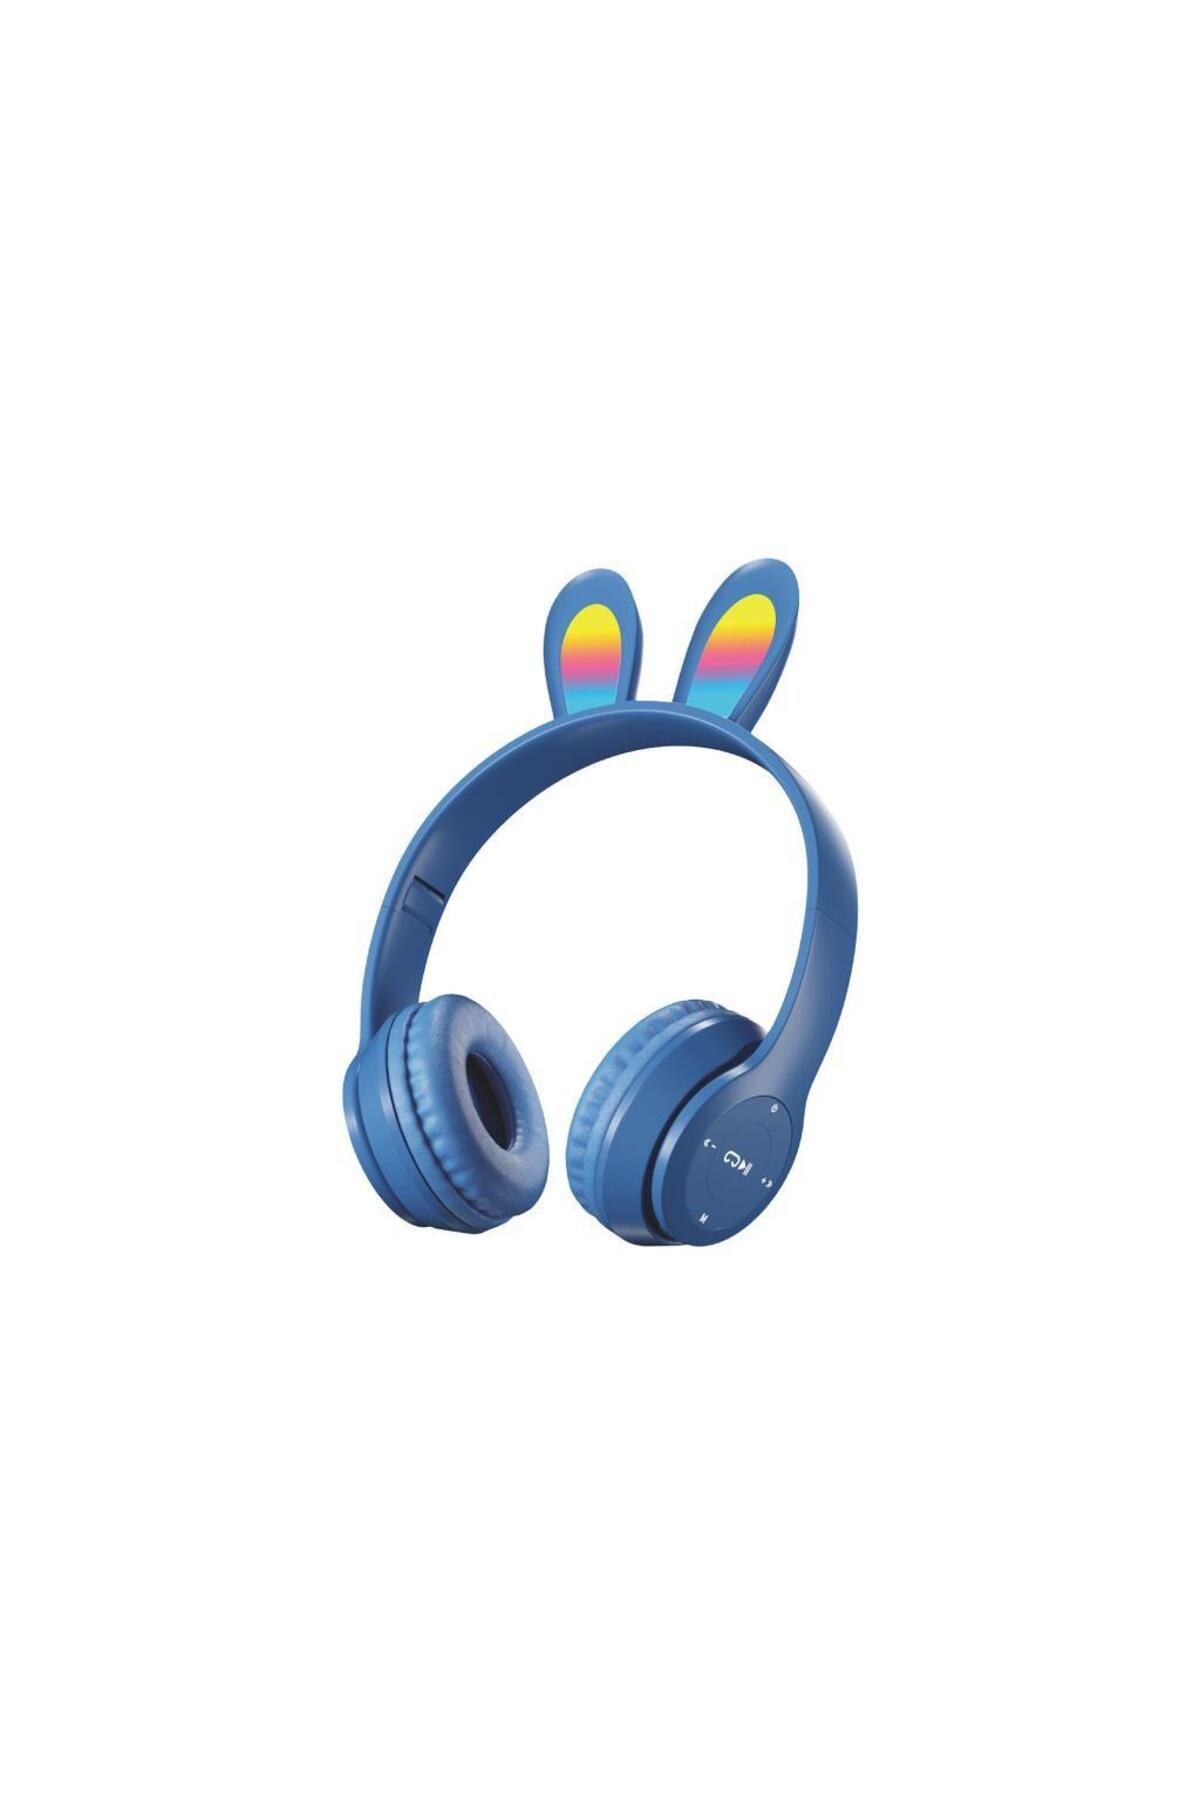 Sunix Wireless 5.0 Stereo Tavşan Kulak Üstü Bluetooth Kulaklık Mavi Blt-43